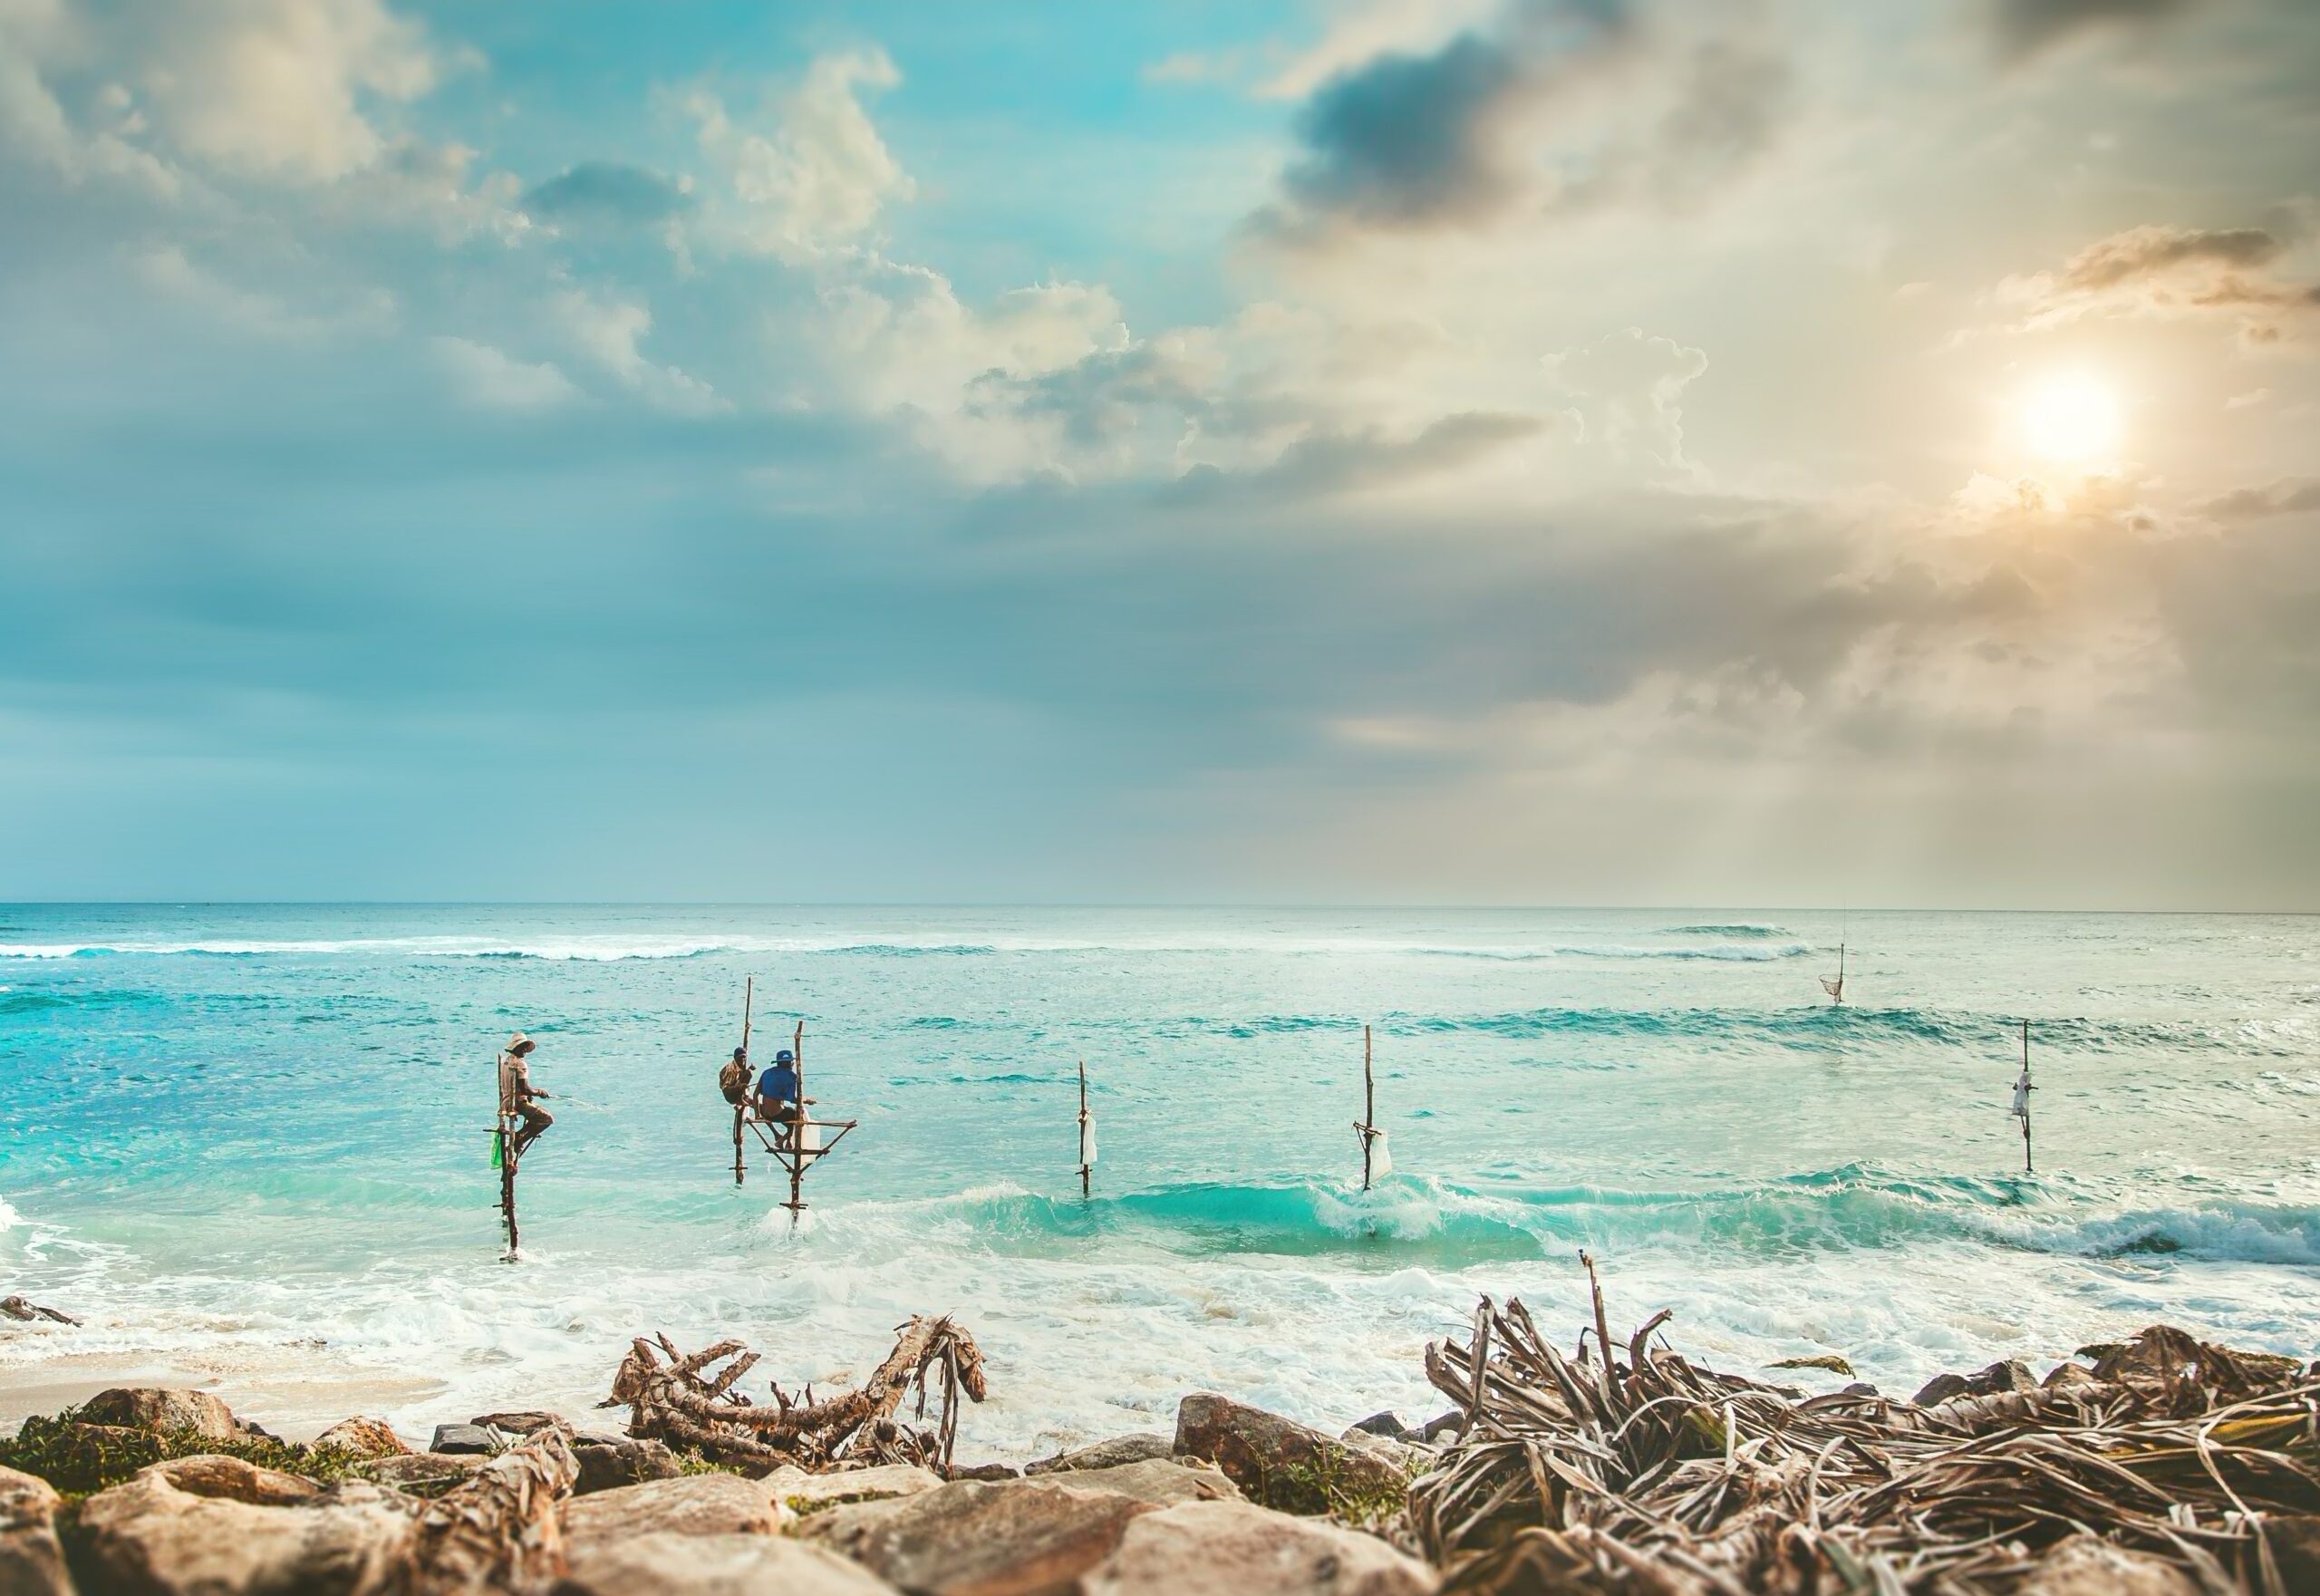 sri lankan people fishing